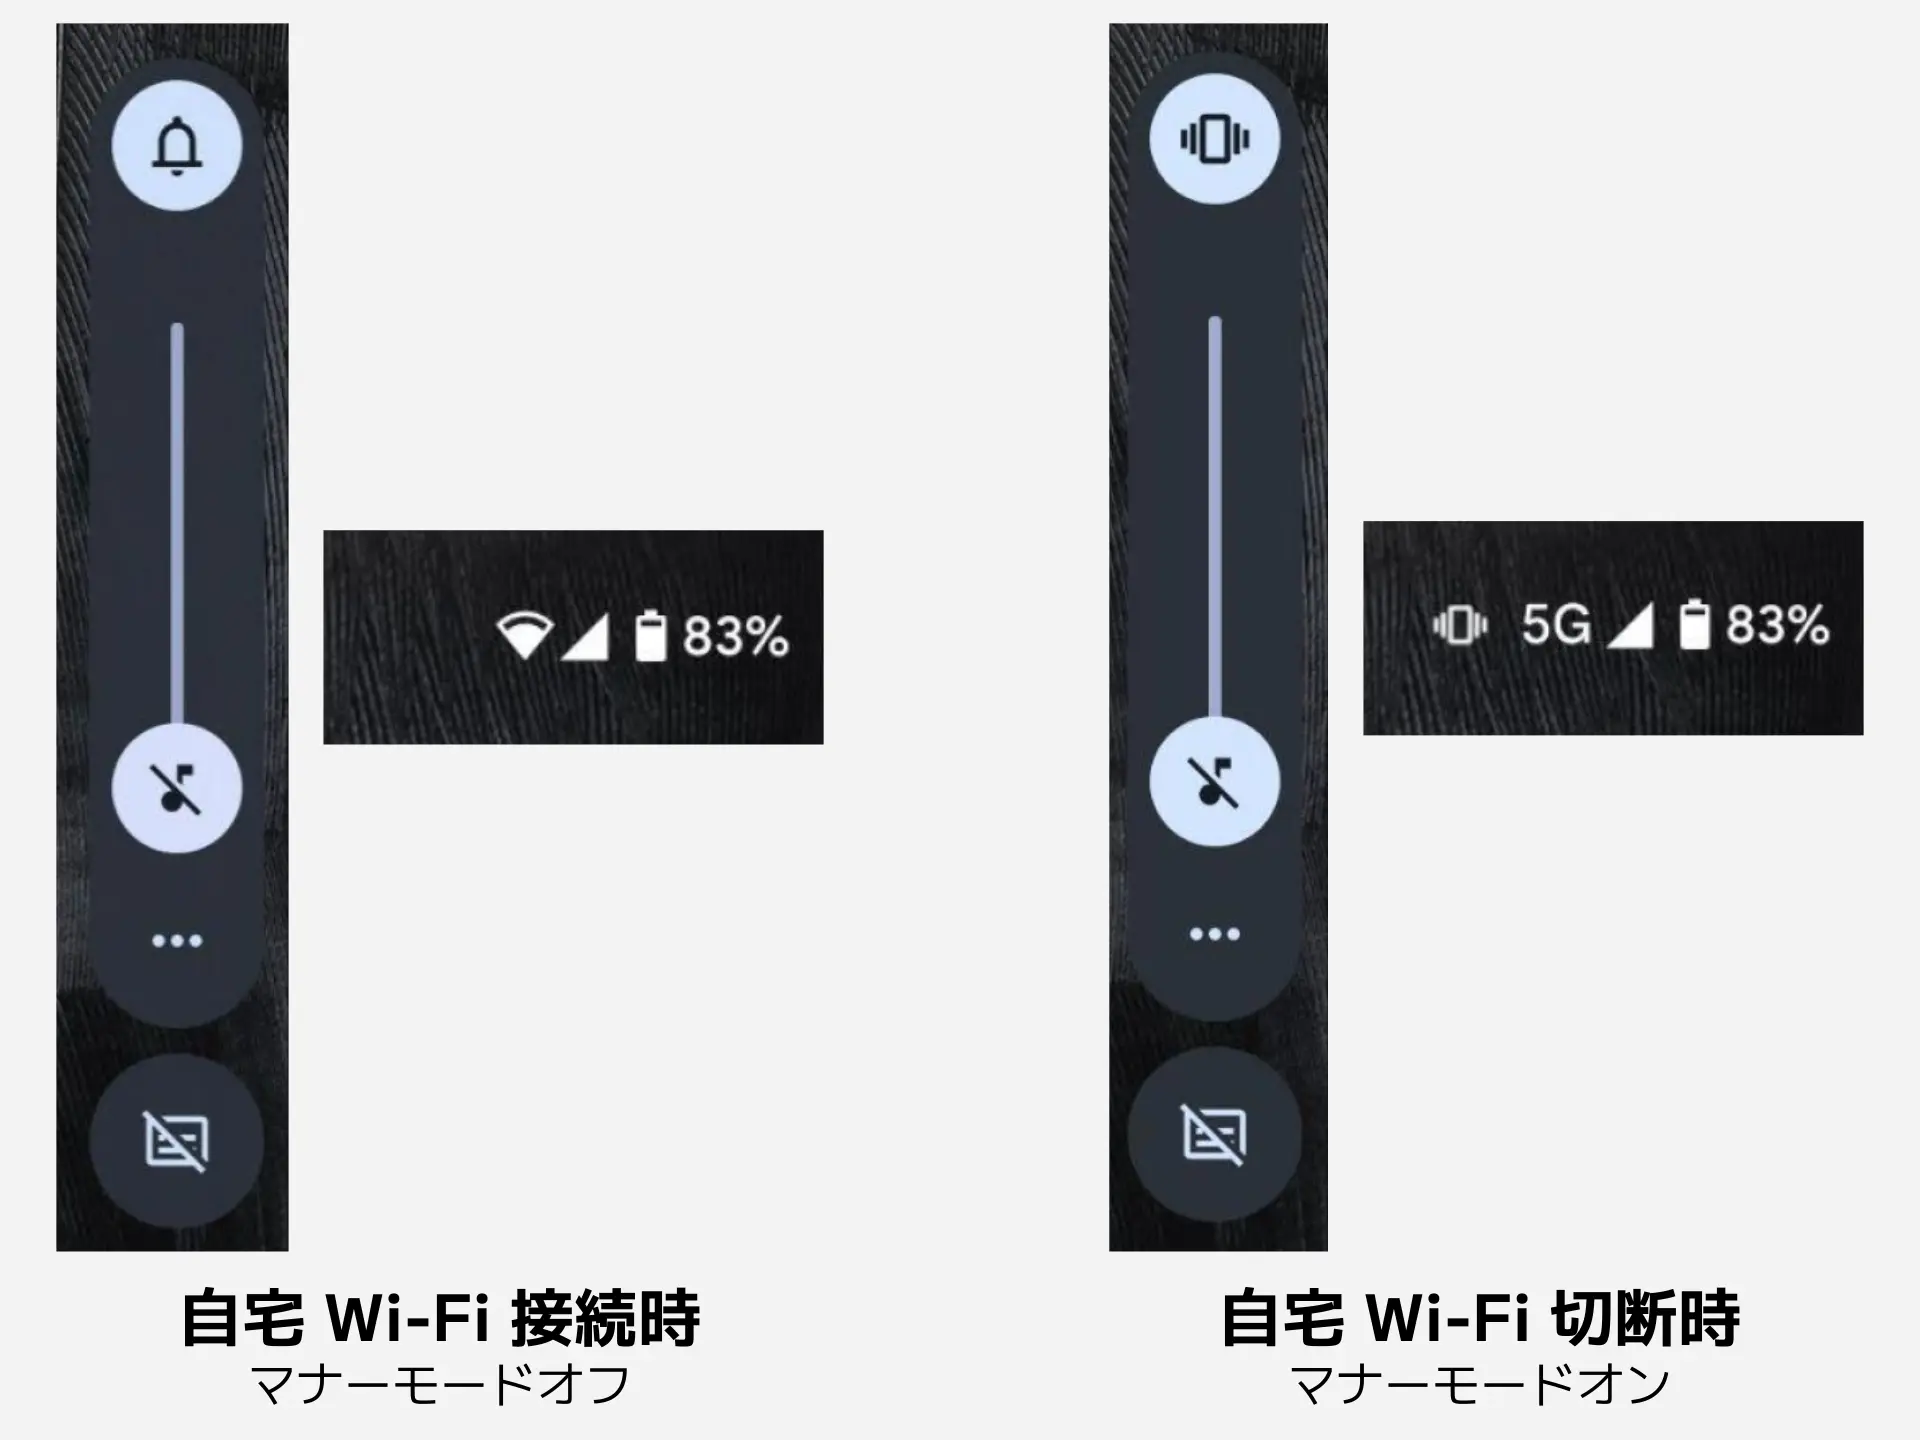 自宅の Wi-Fi に接続されているときはマナーモードがオフに、切断されているときはマナーモードがオンになる。